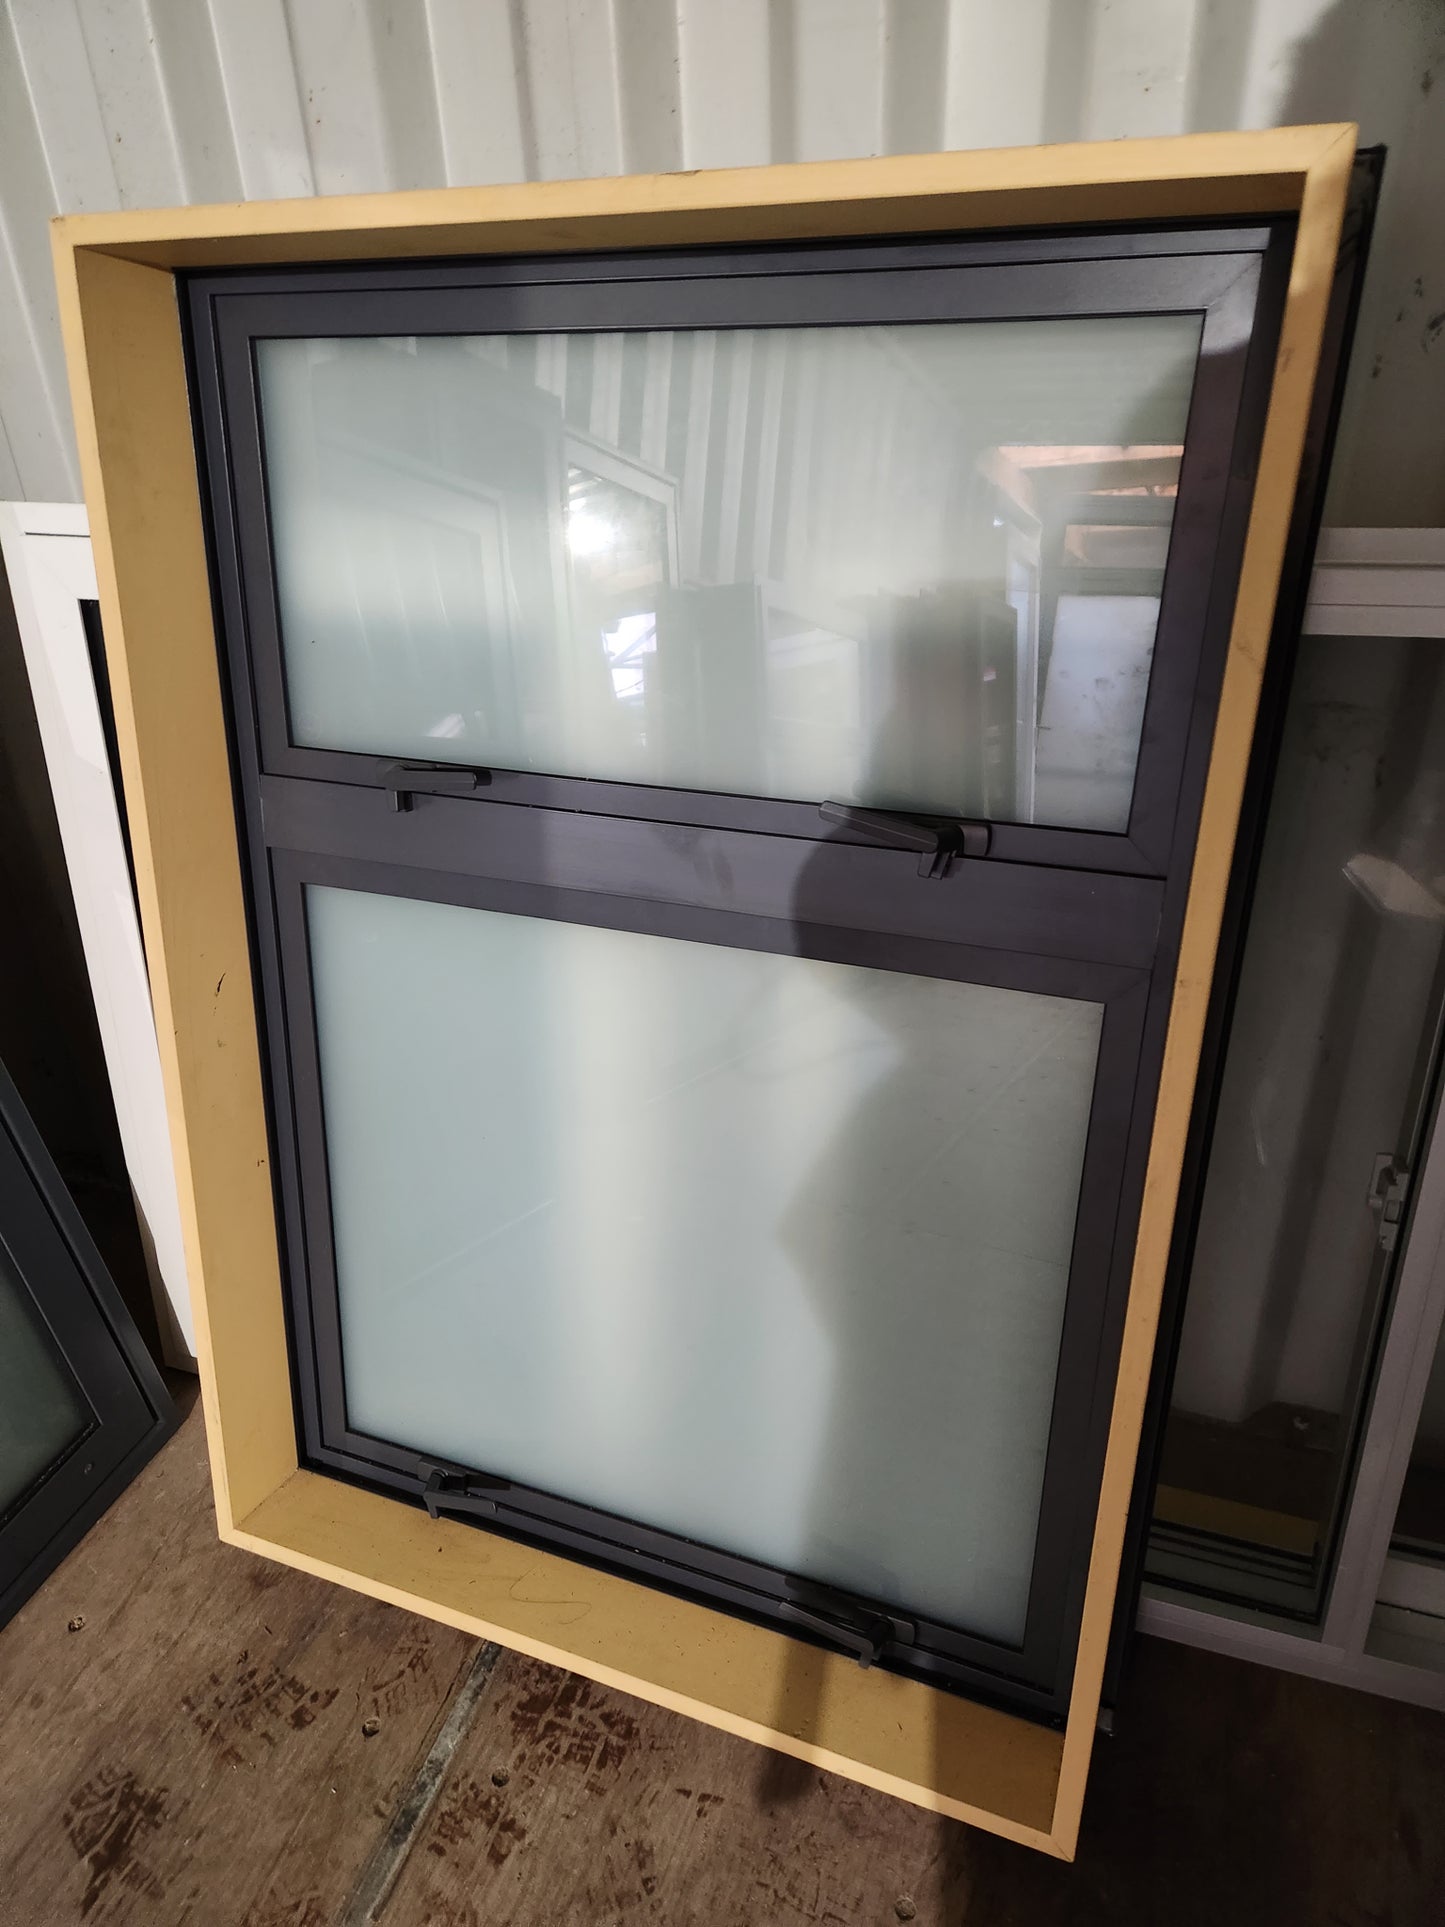 NEW Double Glazed Grey Friars Double Opening Window 1120 H x 800 W #DG025